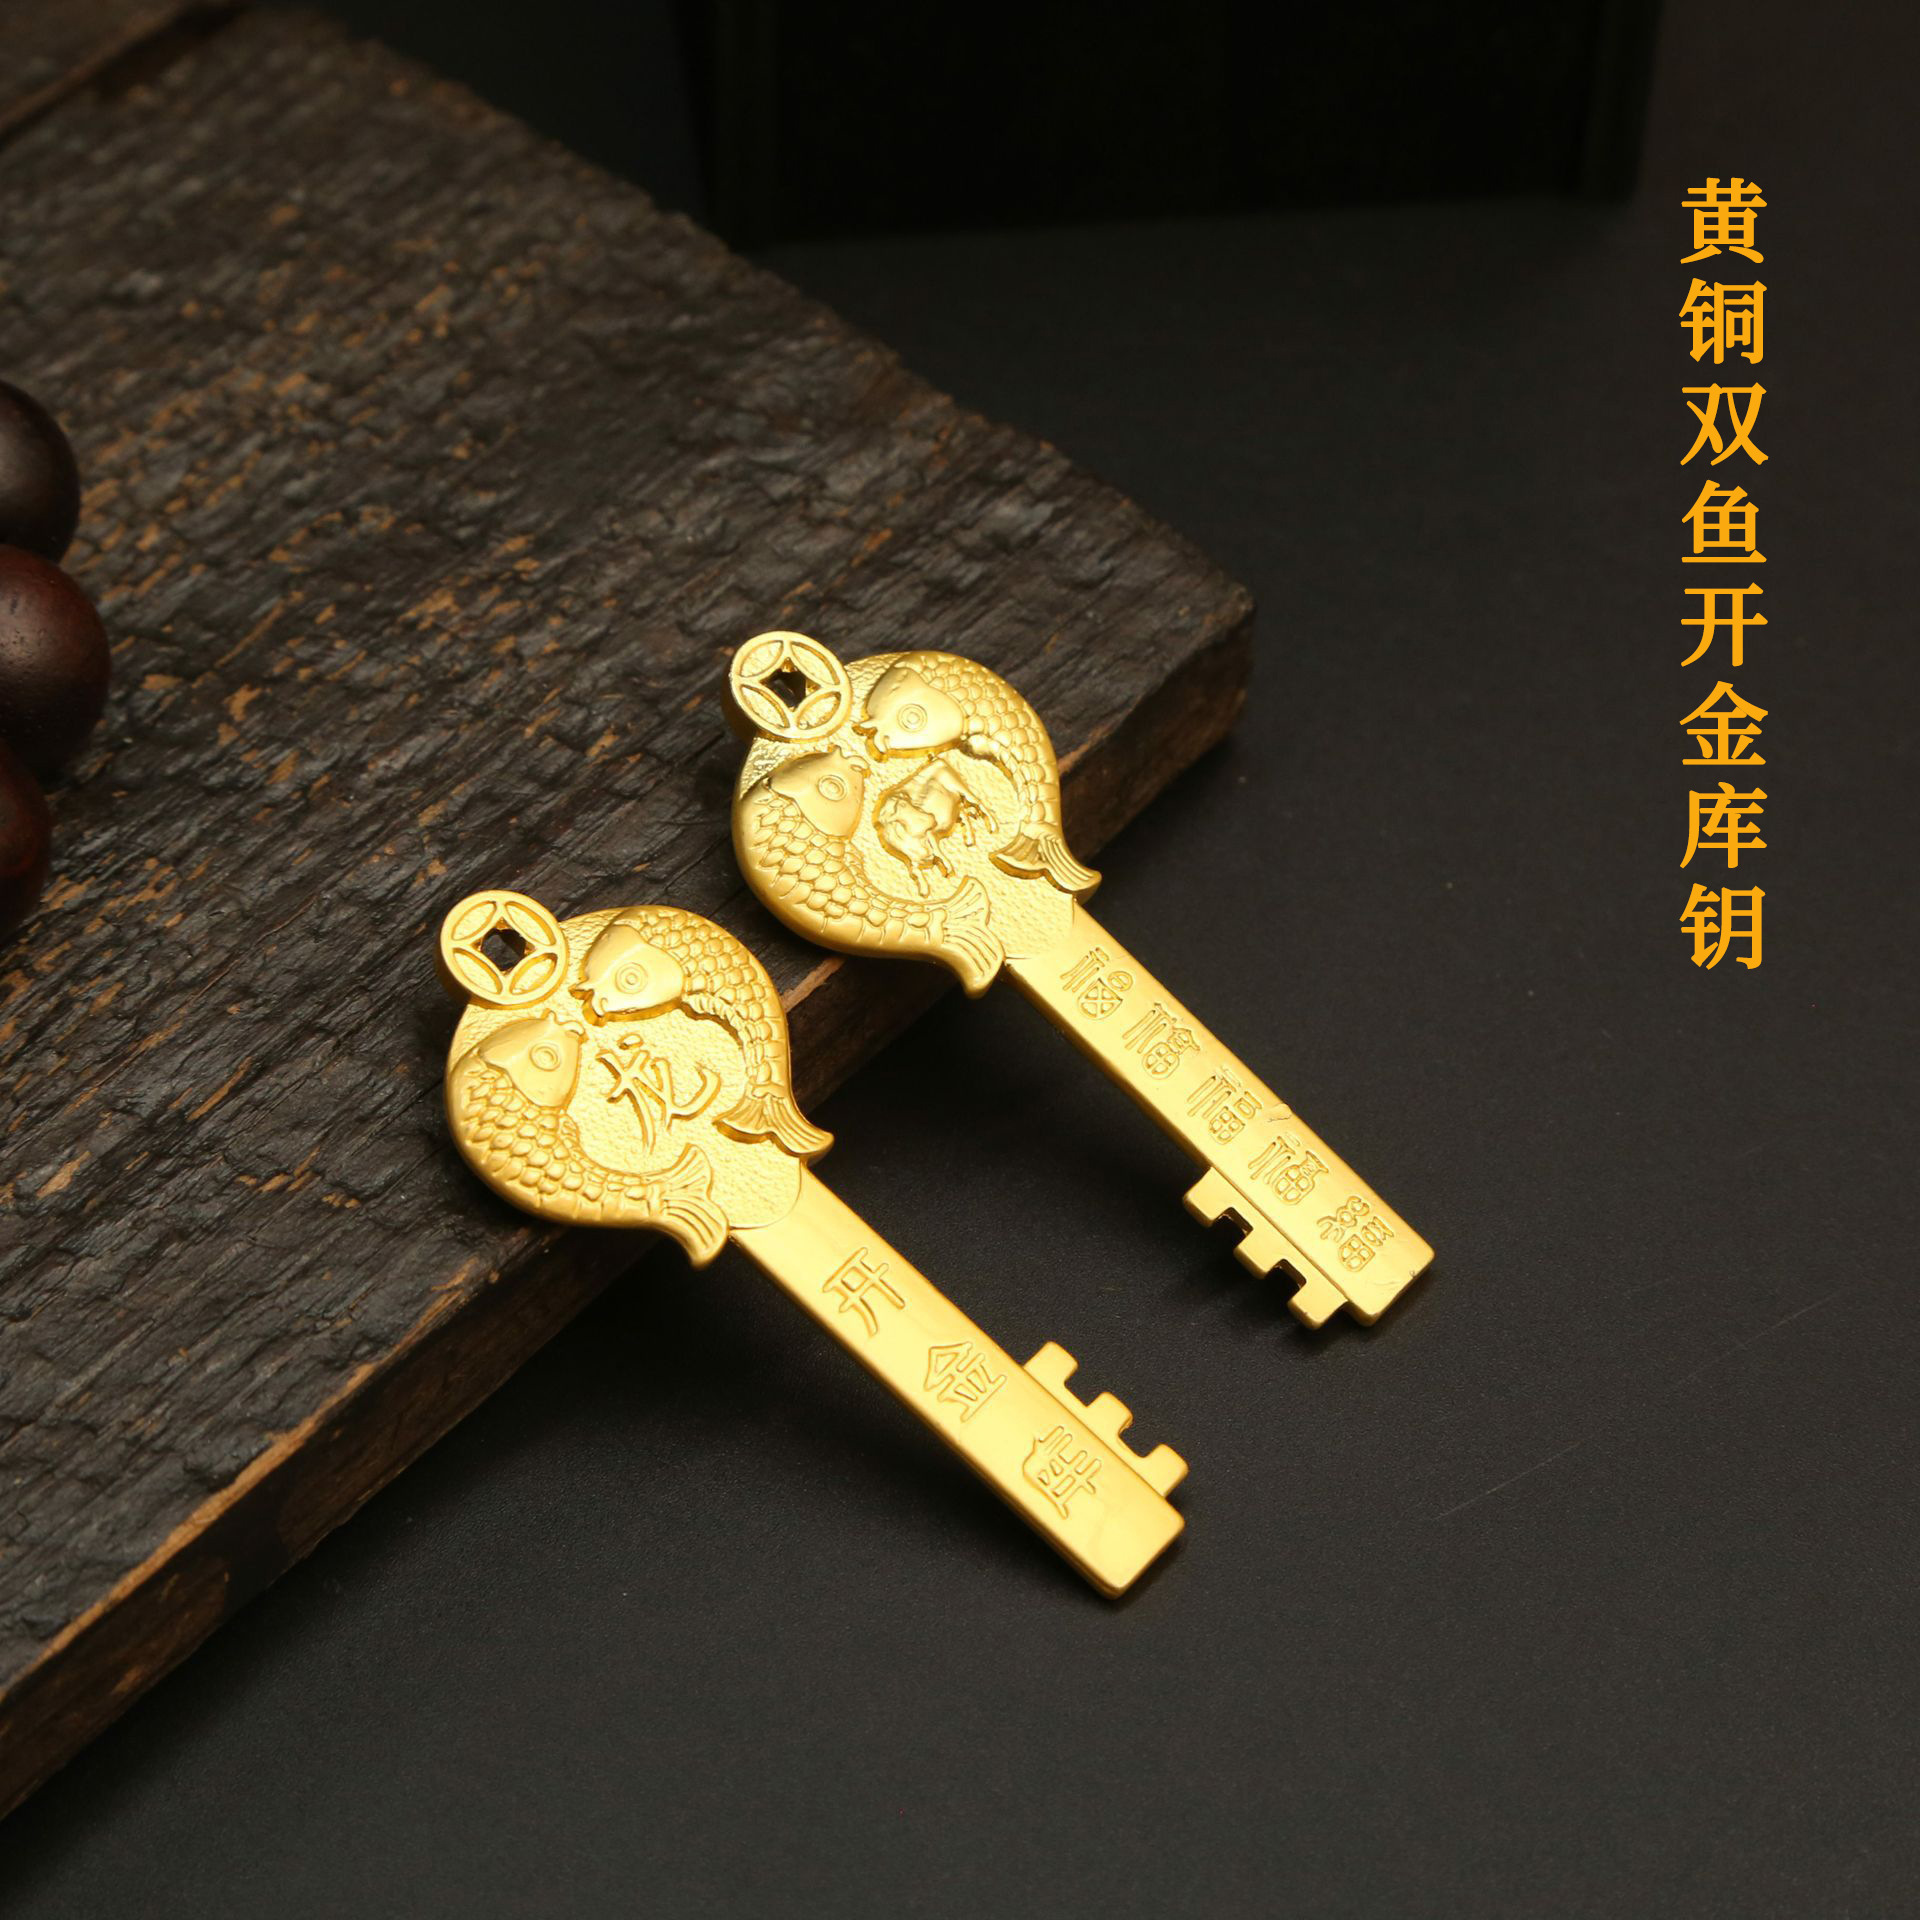 黄铜十二生肖金色钥匙挂件 双鱼开金库钥匙扣 男女汽车钥匙包包挂